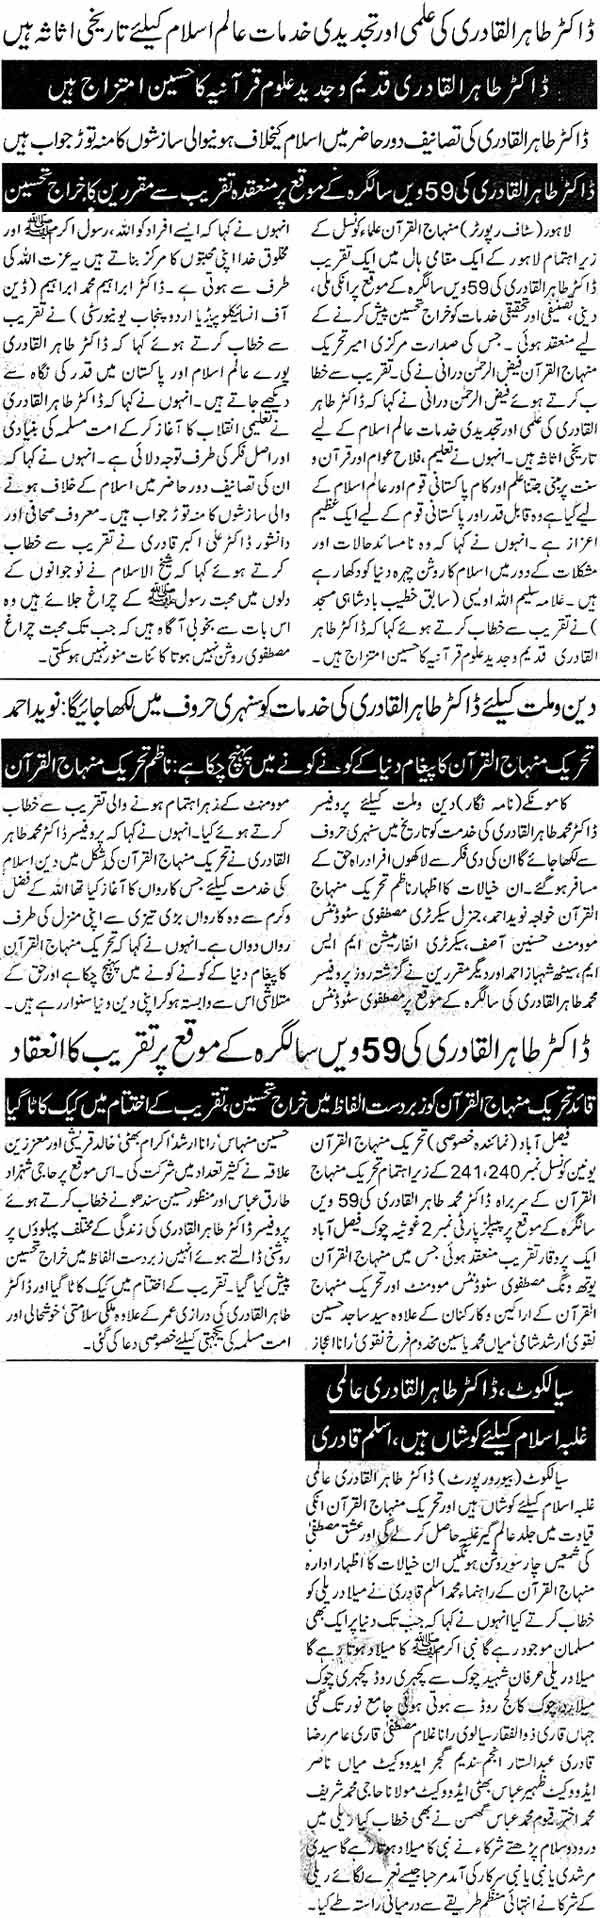 Minhaj-ul-Quran  Print Media Coverage Daily Taqat Page: 2, 5